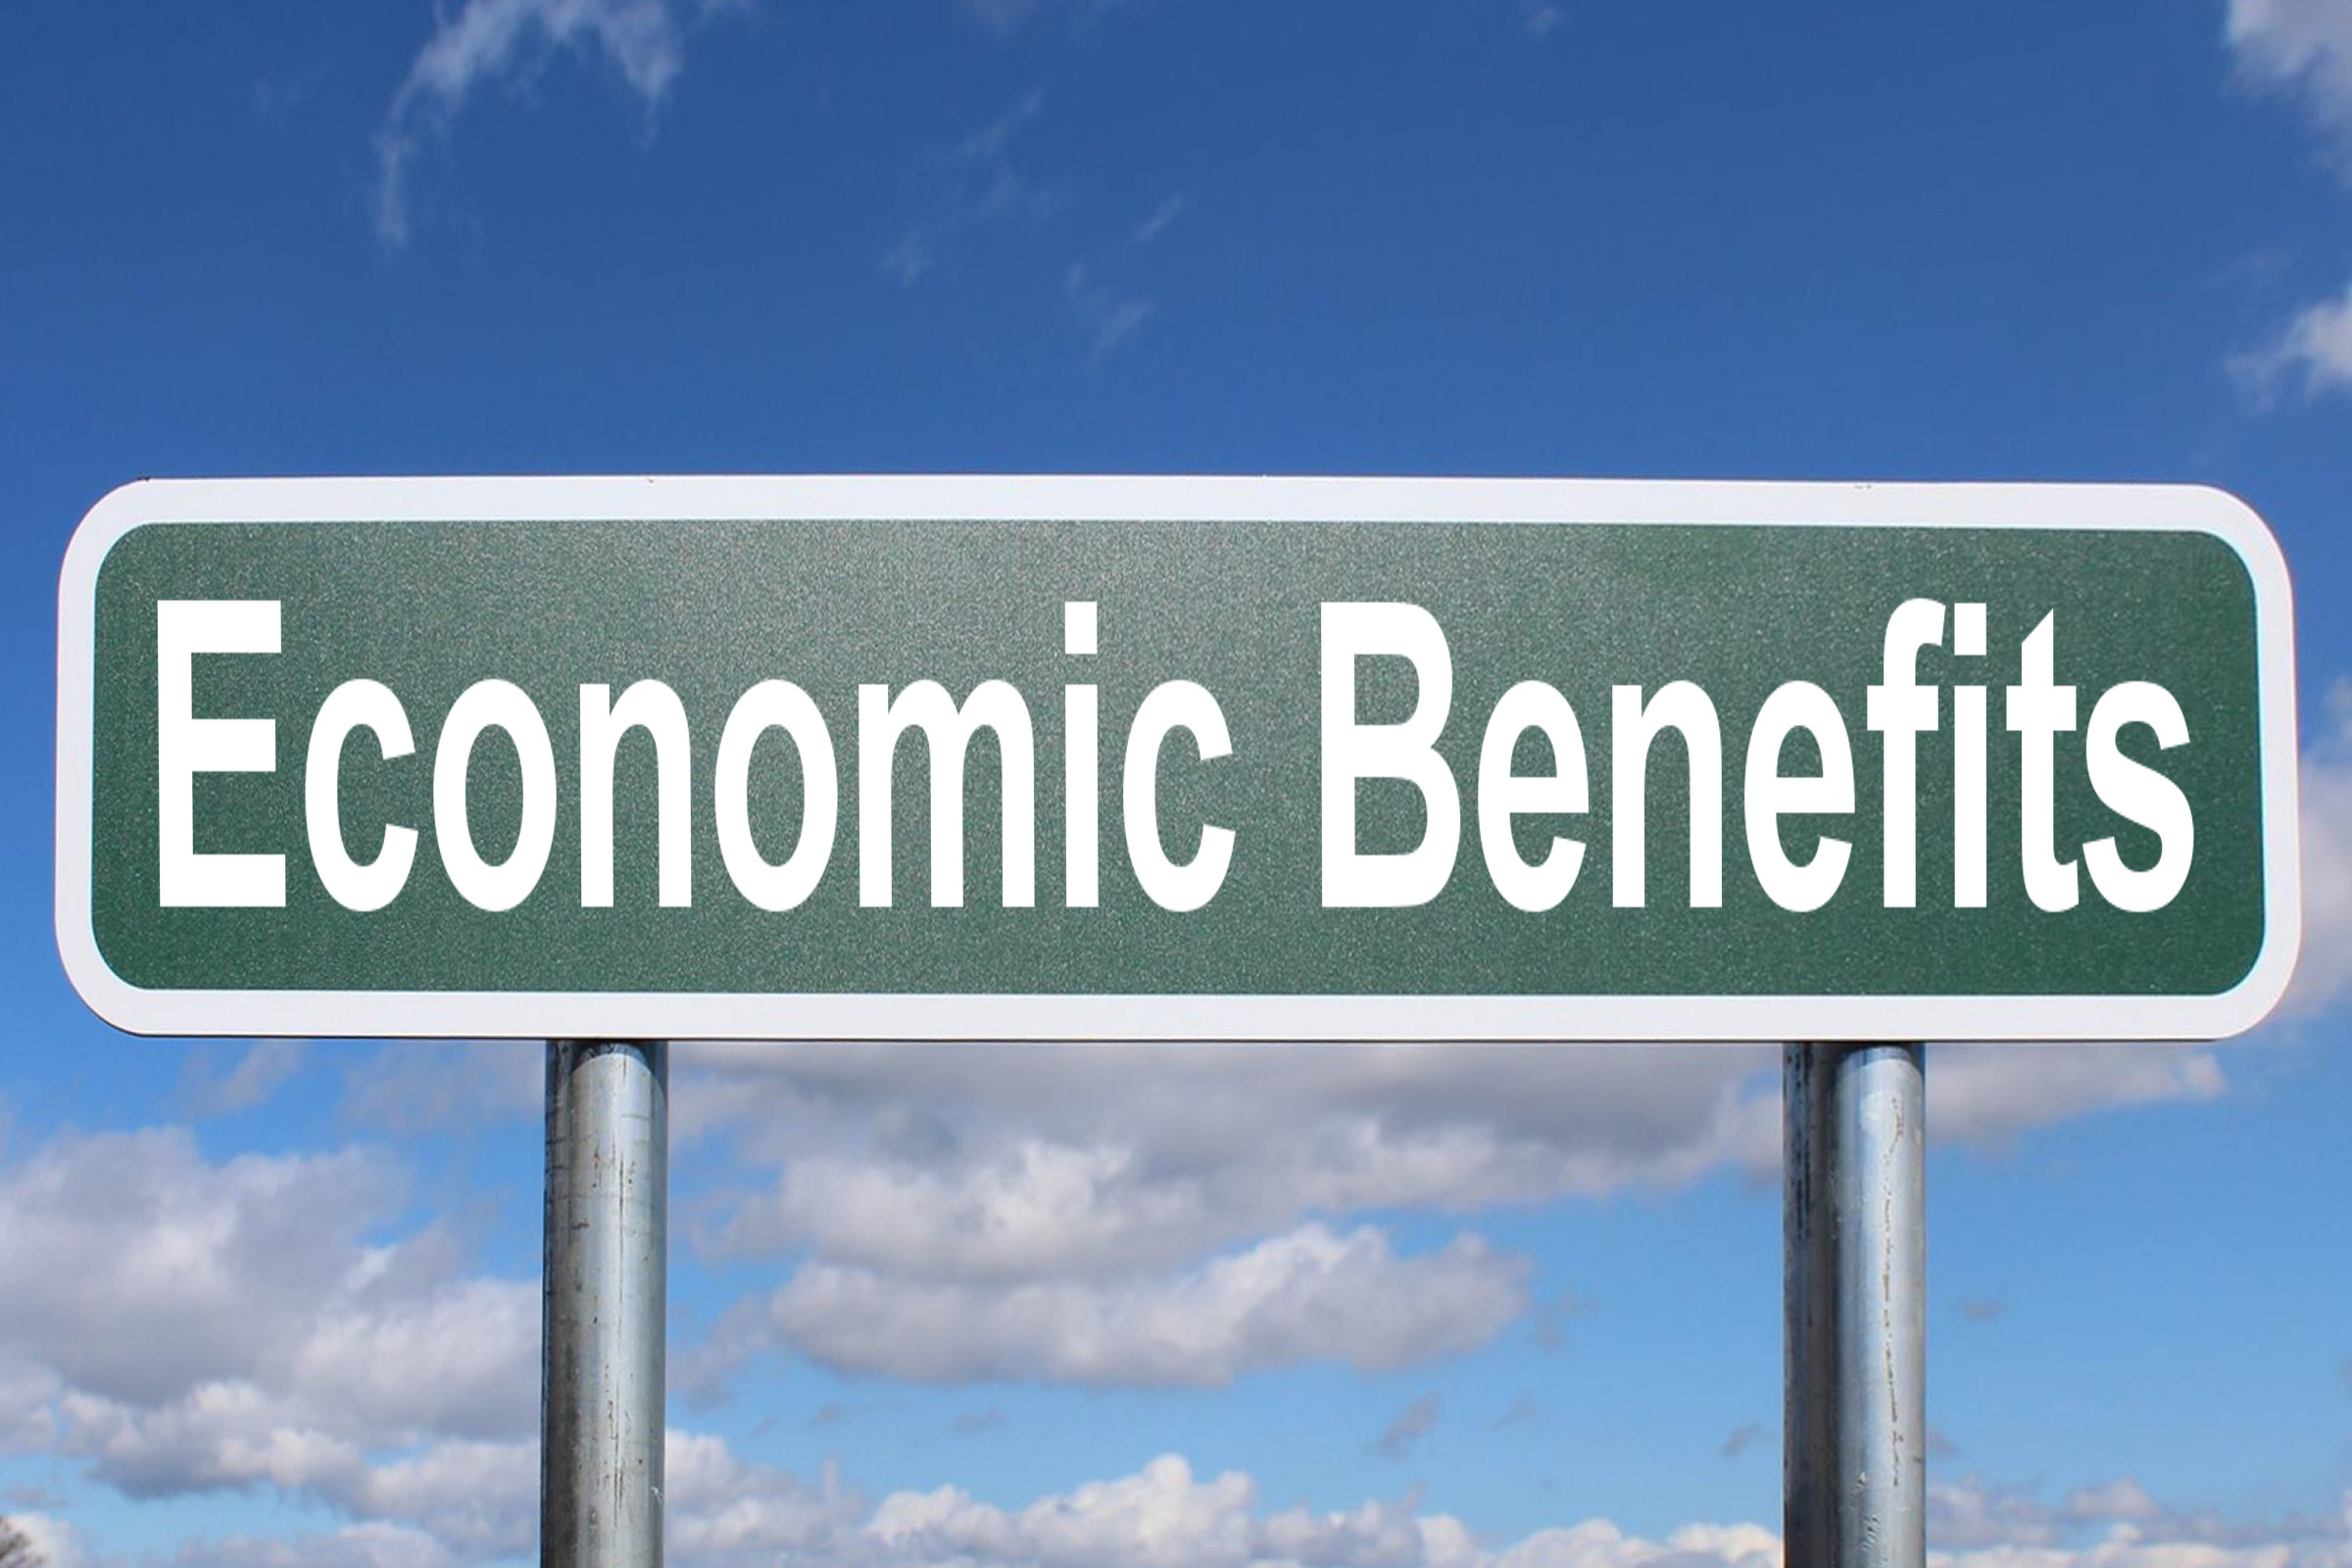 economic benefits